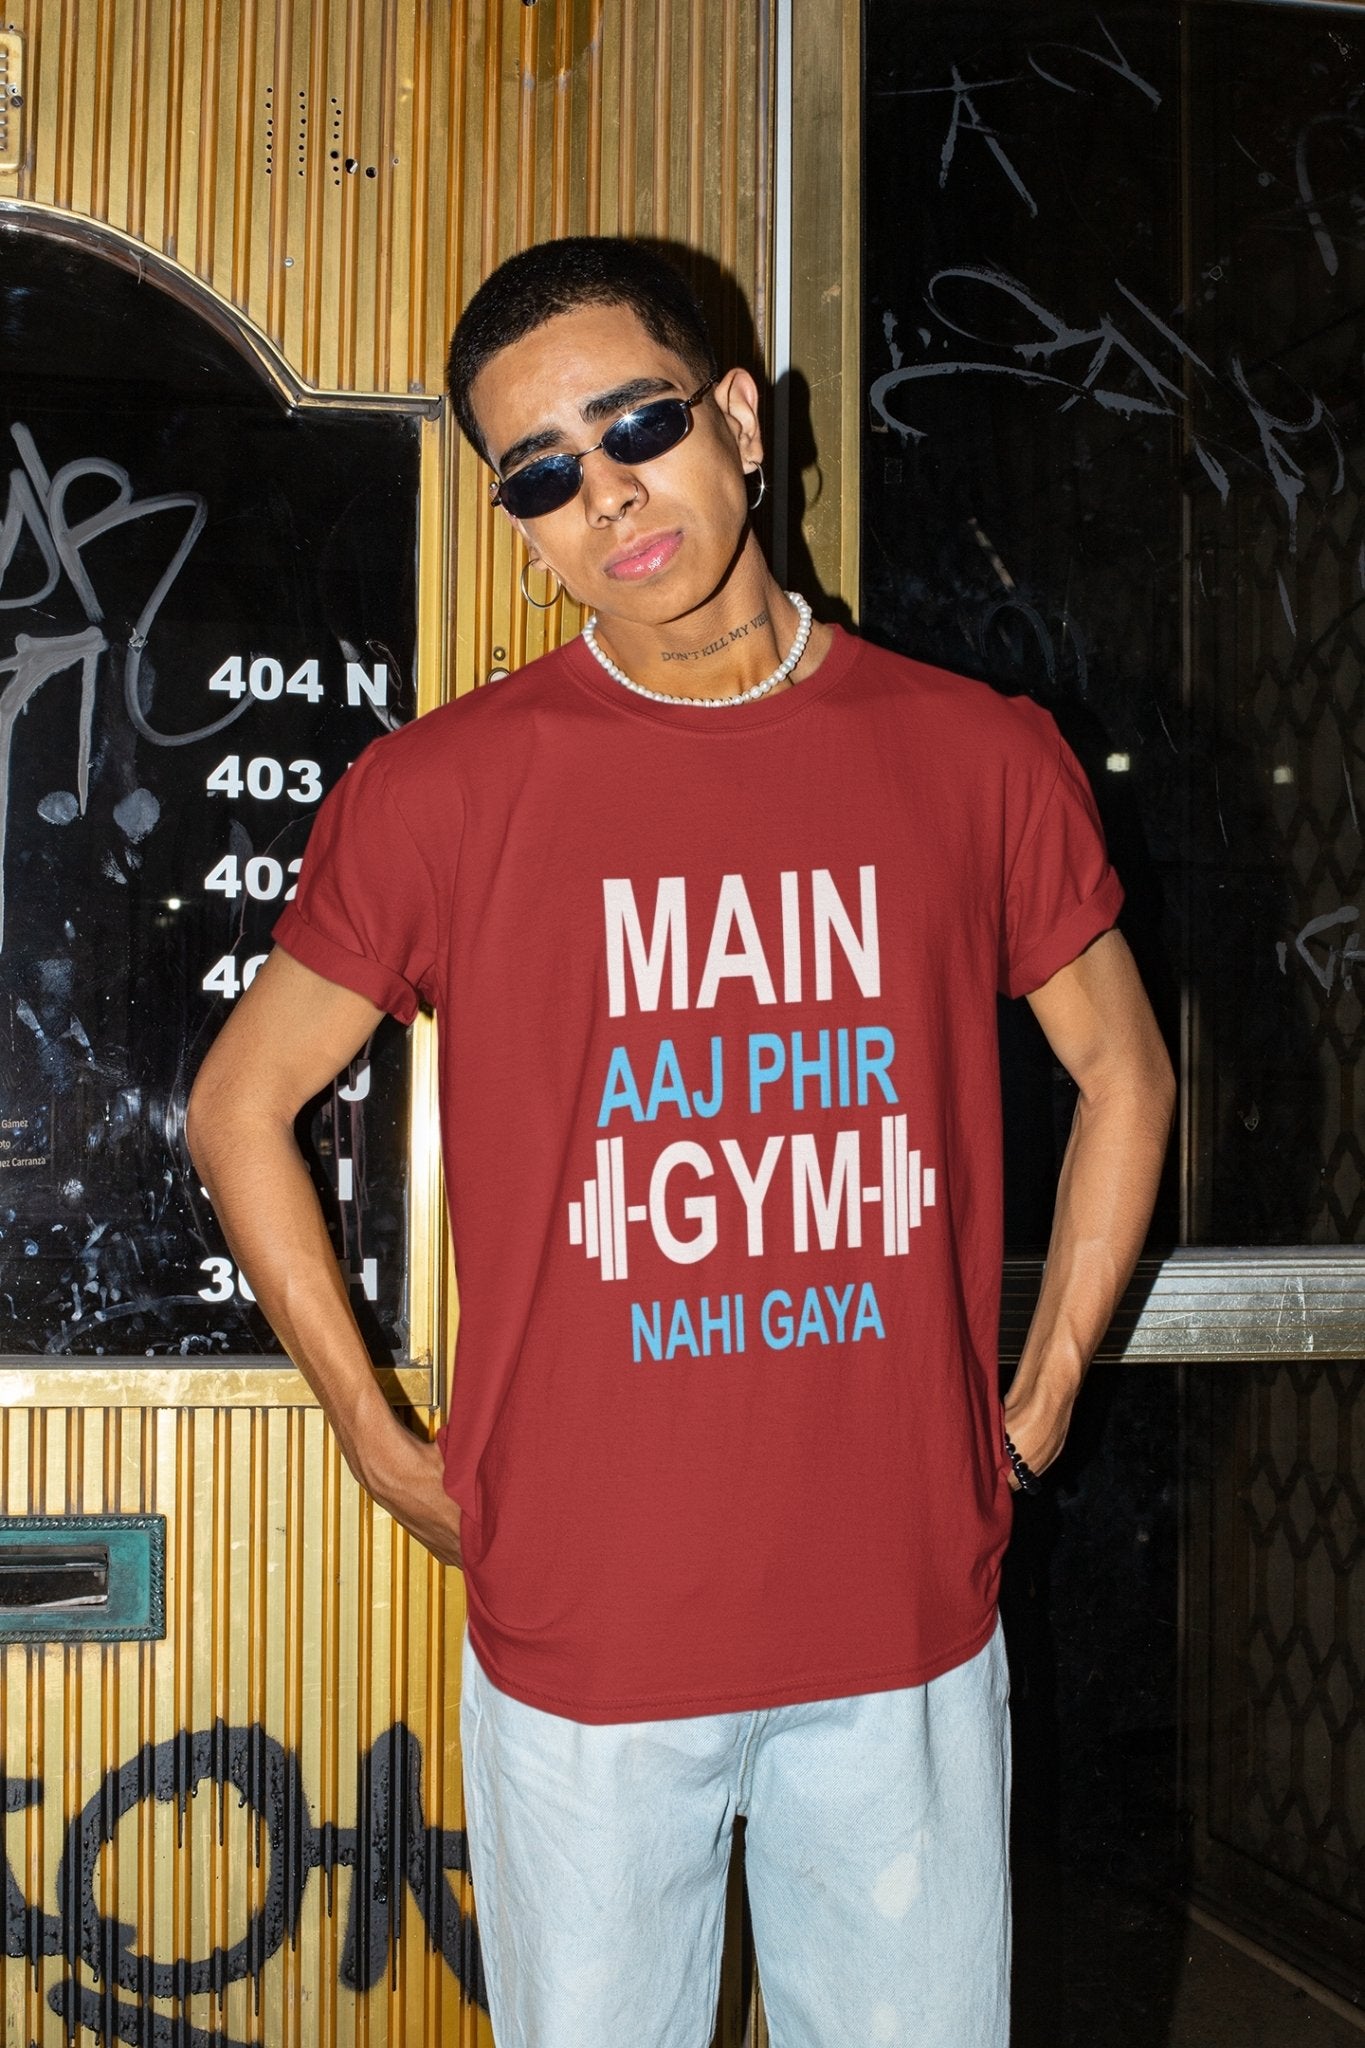 Main Aaj Phir Gym Nahi Gaya Mens Half Sleeves T-shirt- FunkyTeesClub - Funky Tees Club